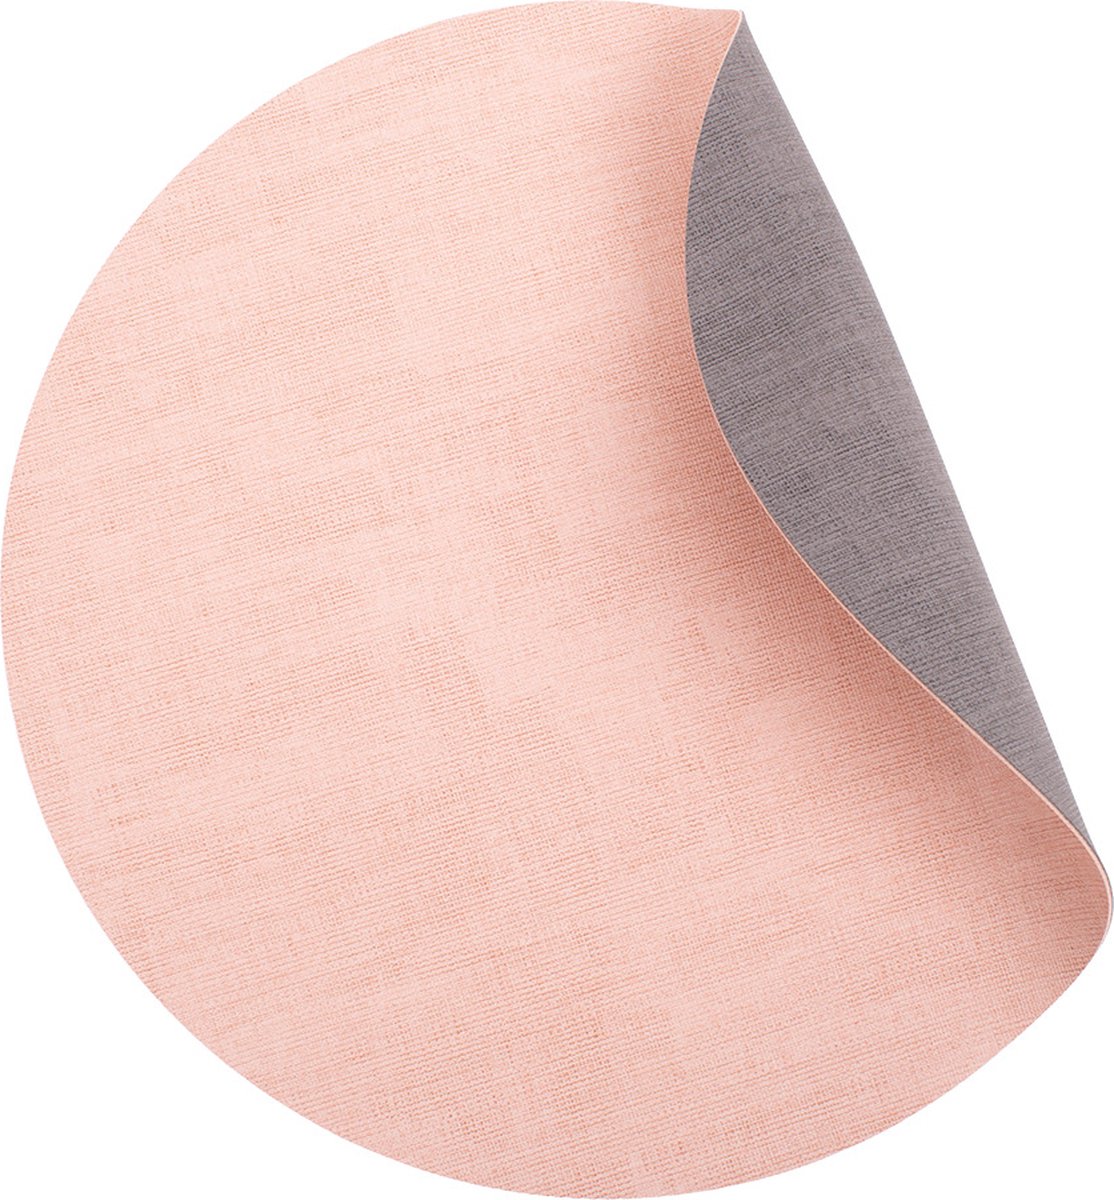 Luxe placemats lederlook - Rond - 6 stuks - Dubbelzijdig: roze en grijs - 44 x 37 cm - leer - leatherlook placemat